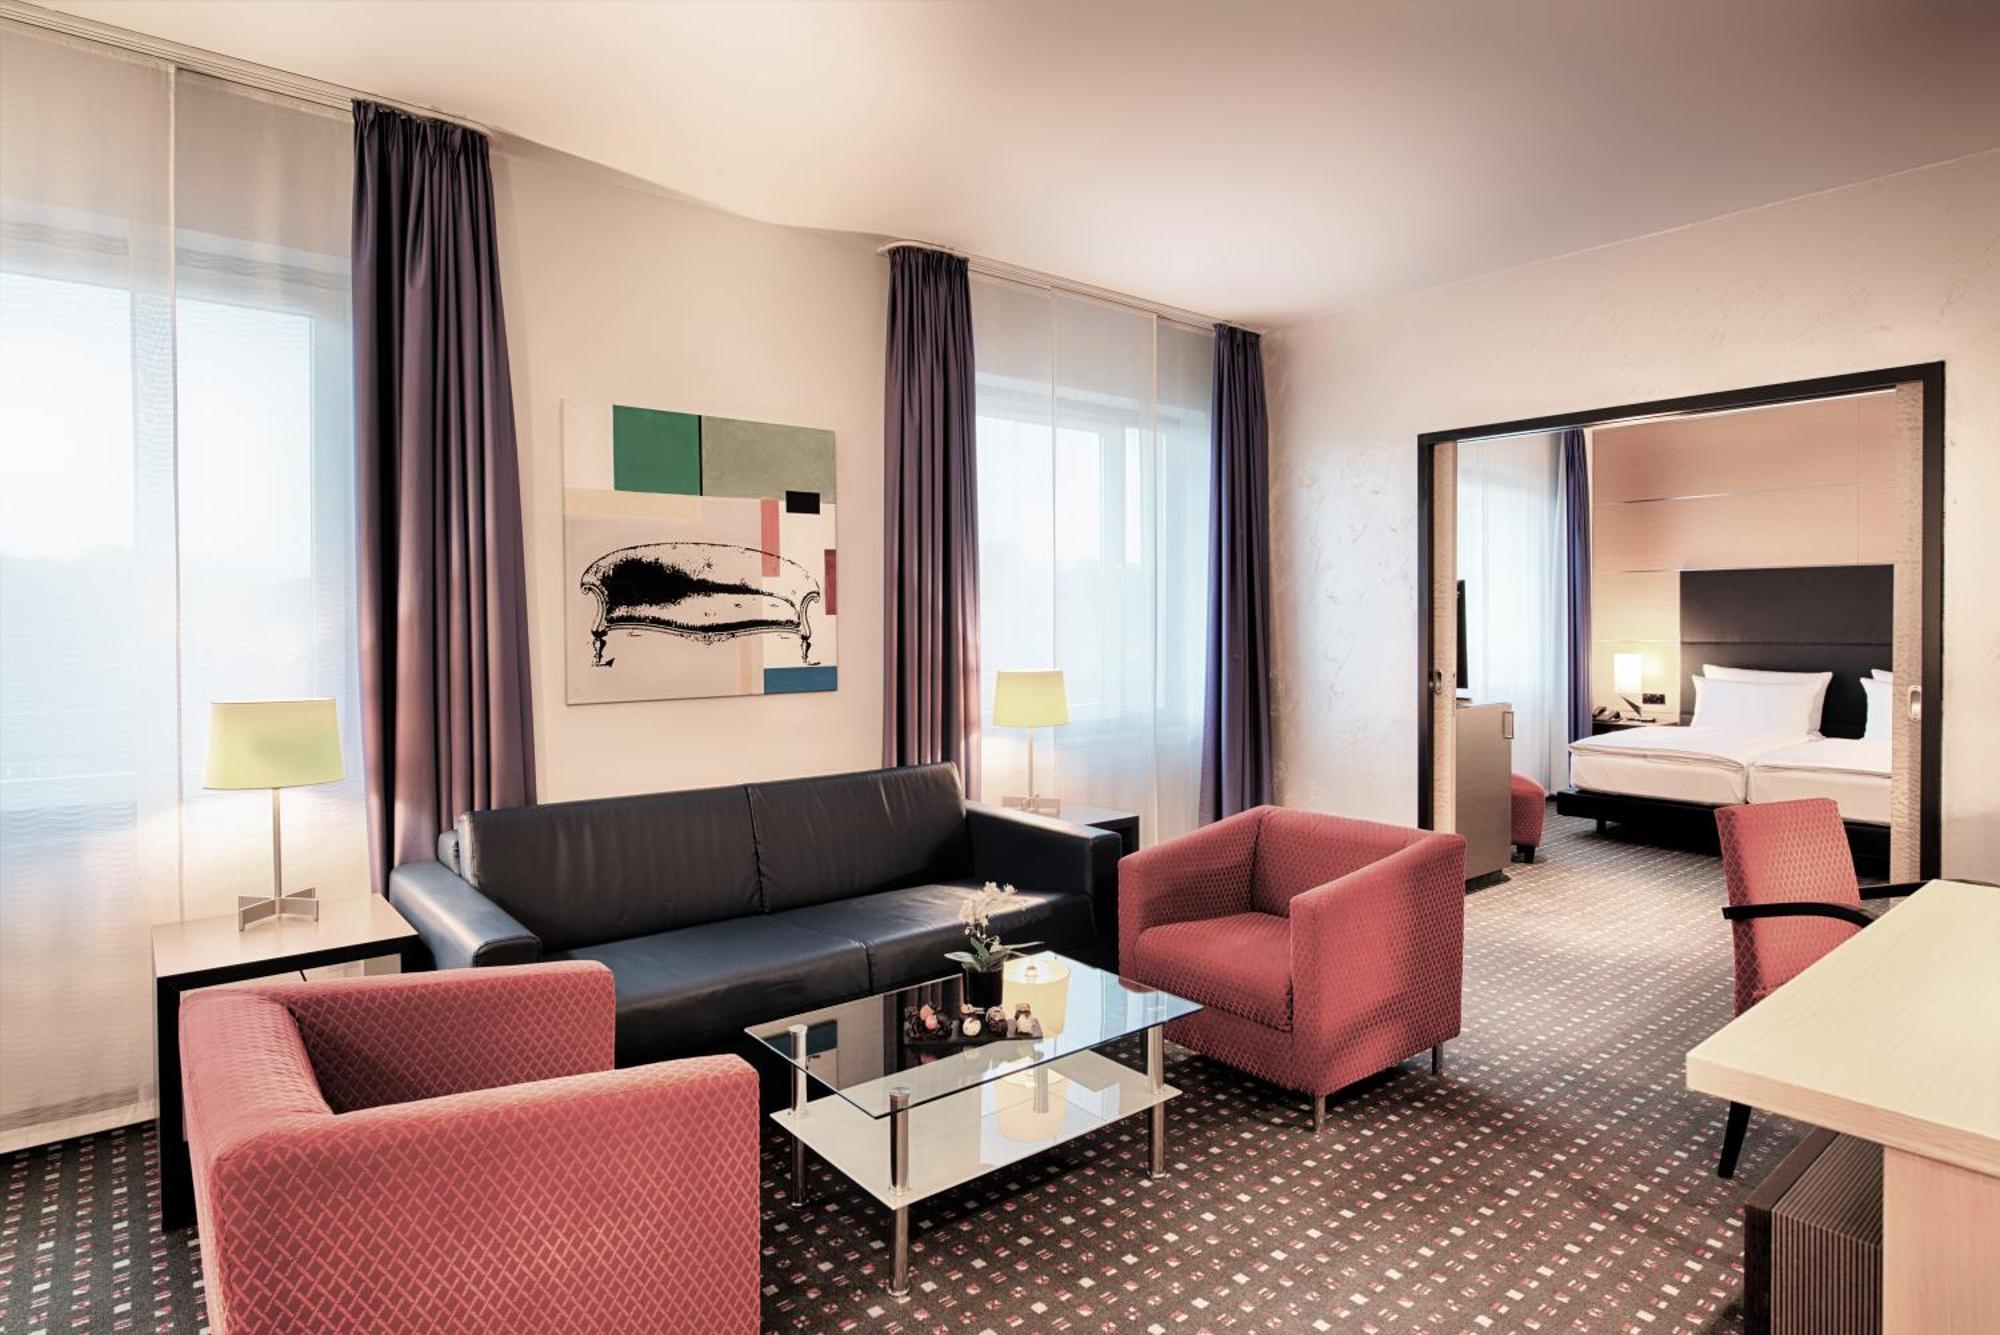 Ramada By Wyndham Essen Hotel Room photo